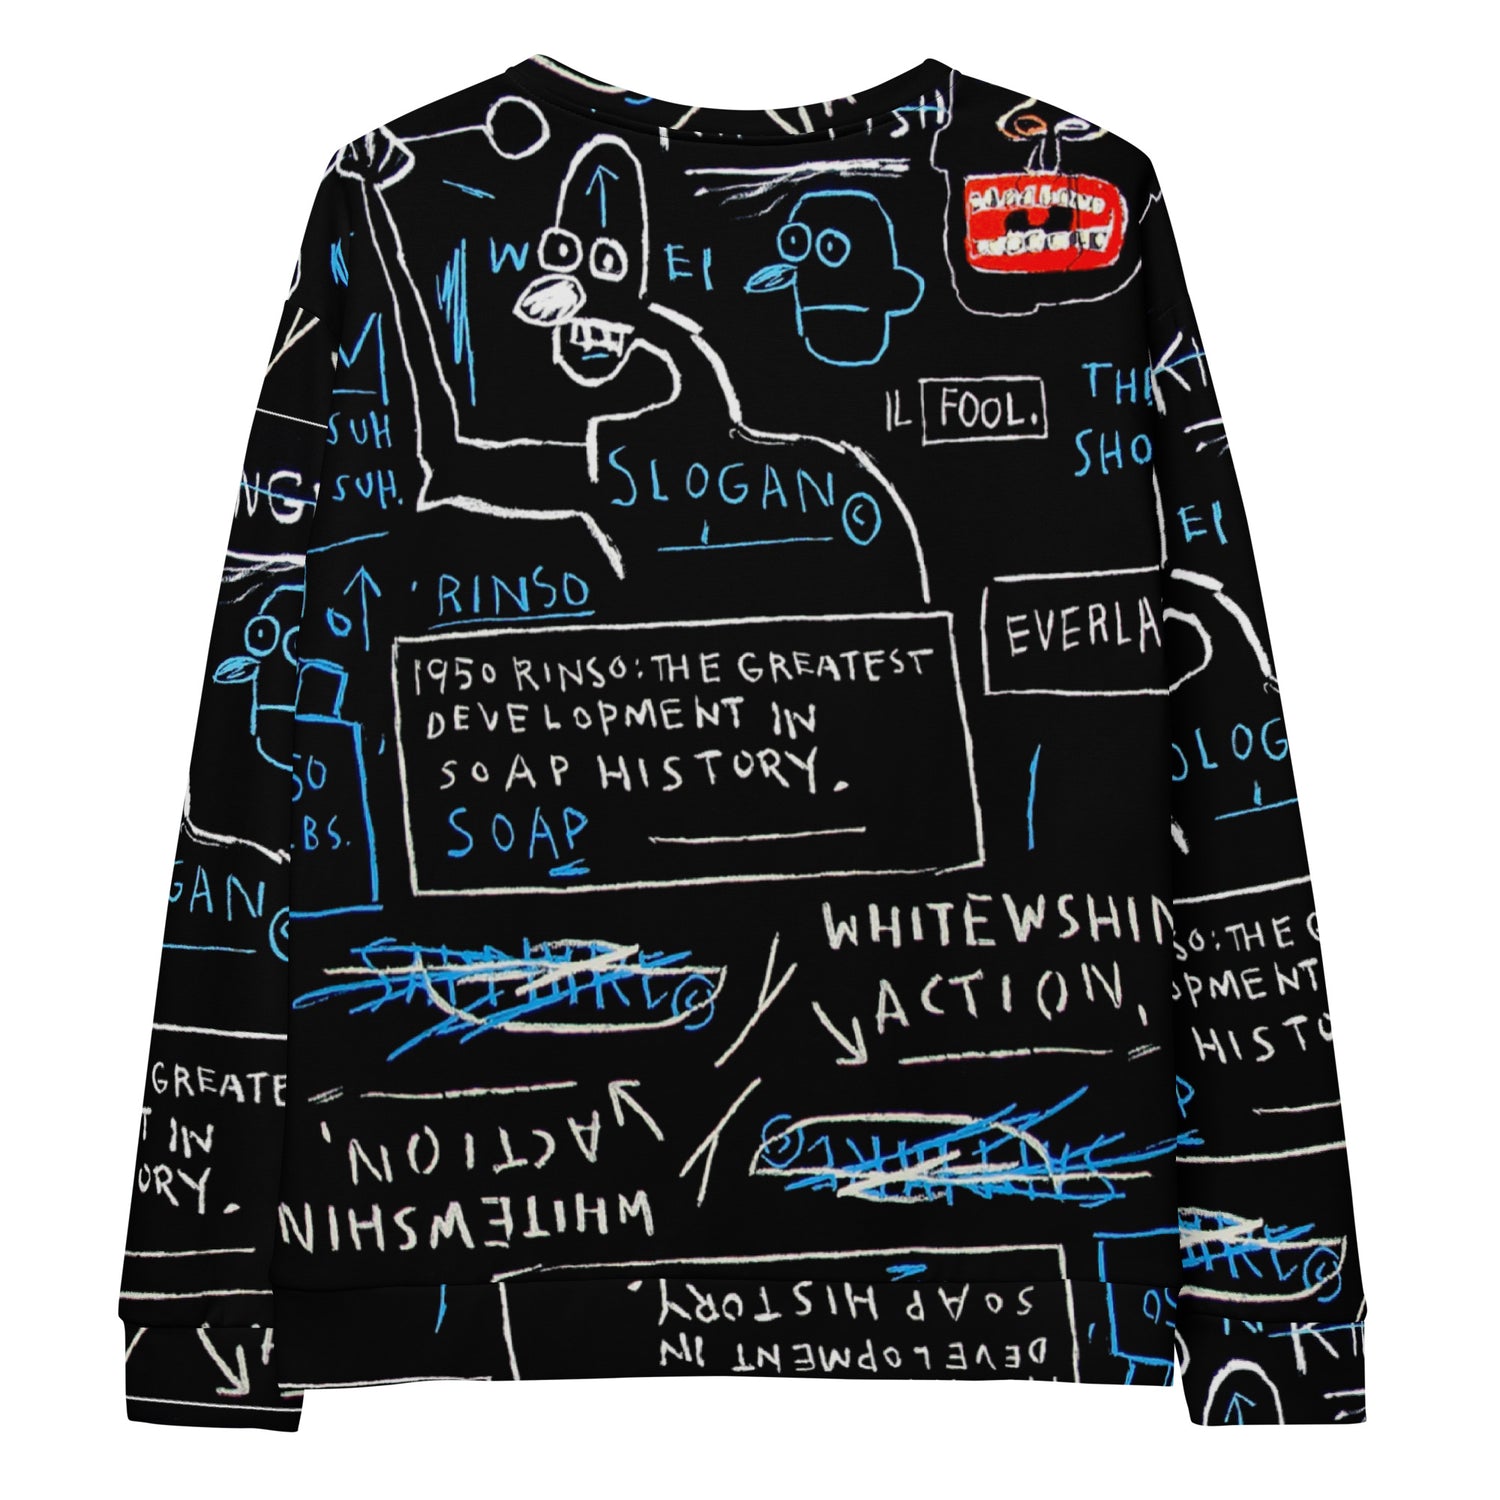 Jean-Michel Basquiat "Rinso" Artwork Printed Premium Streetwear Crewneck Sweatshirt Black Harajuku Graffiti